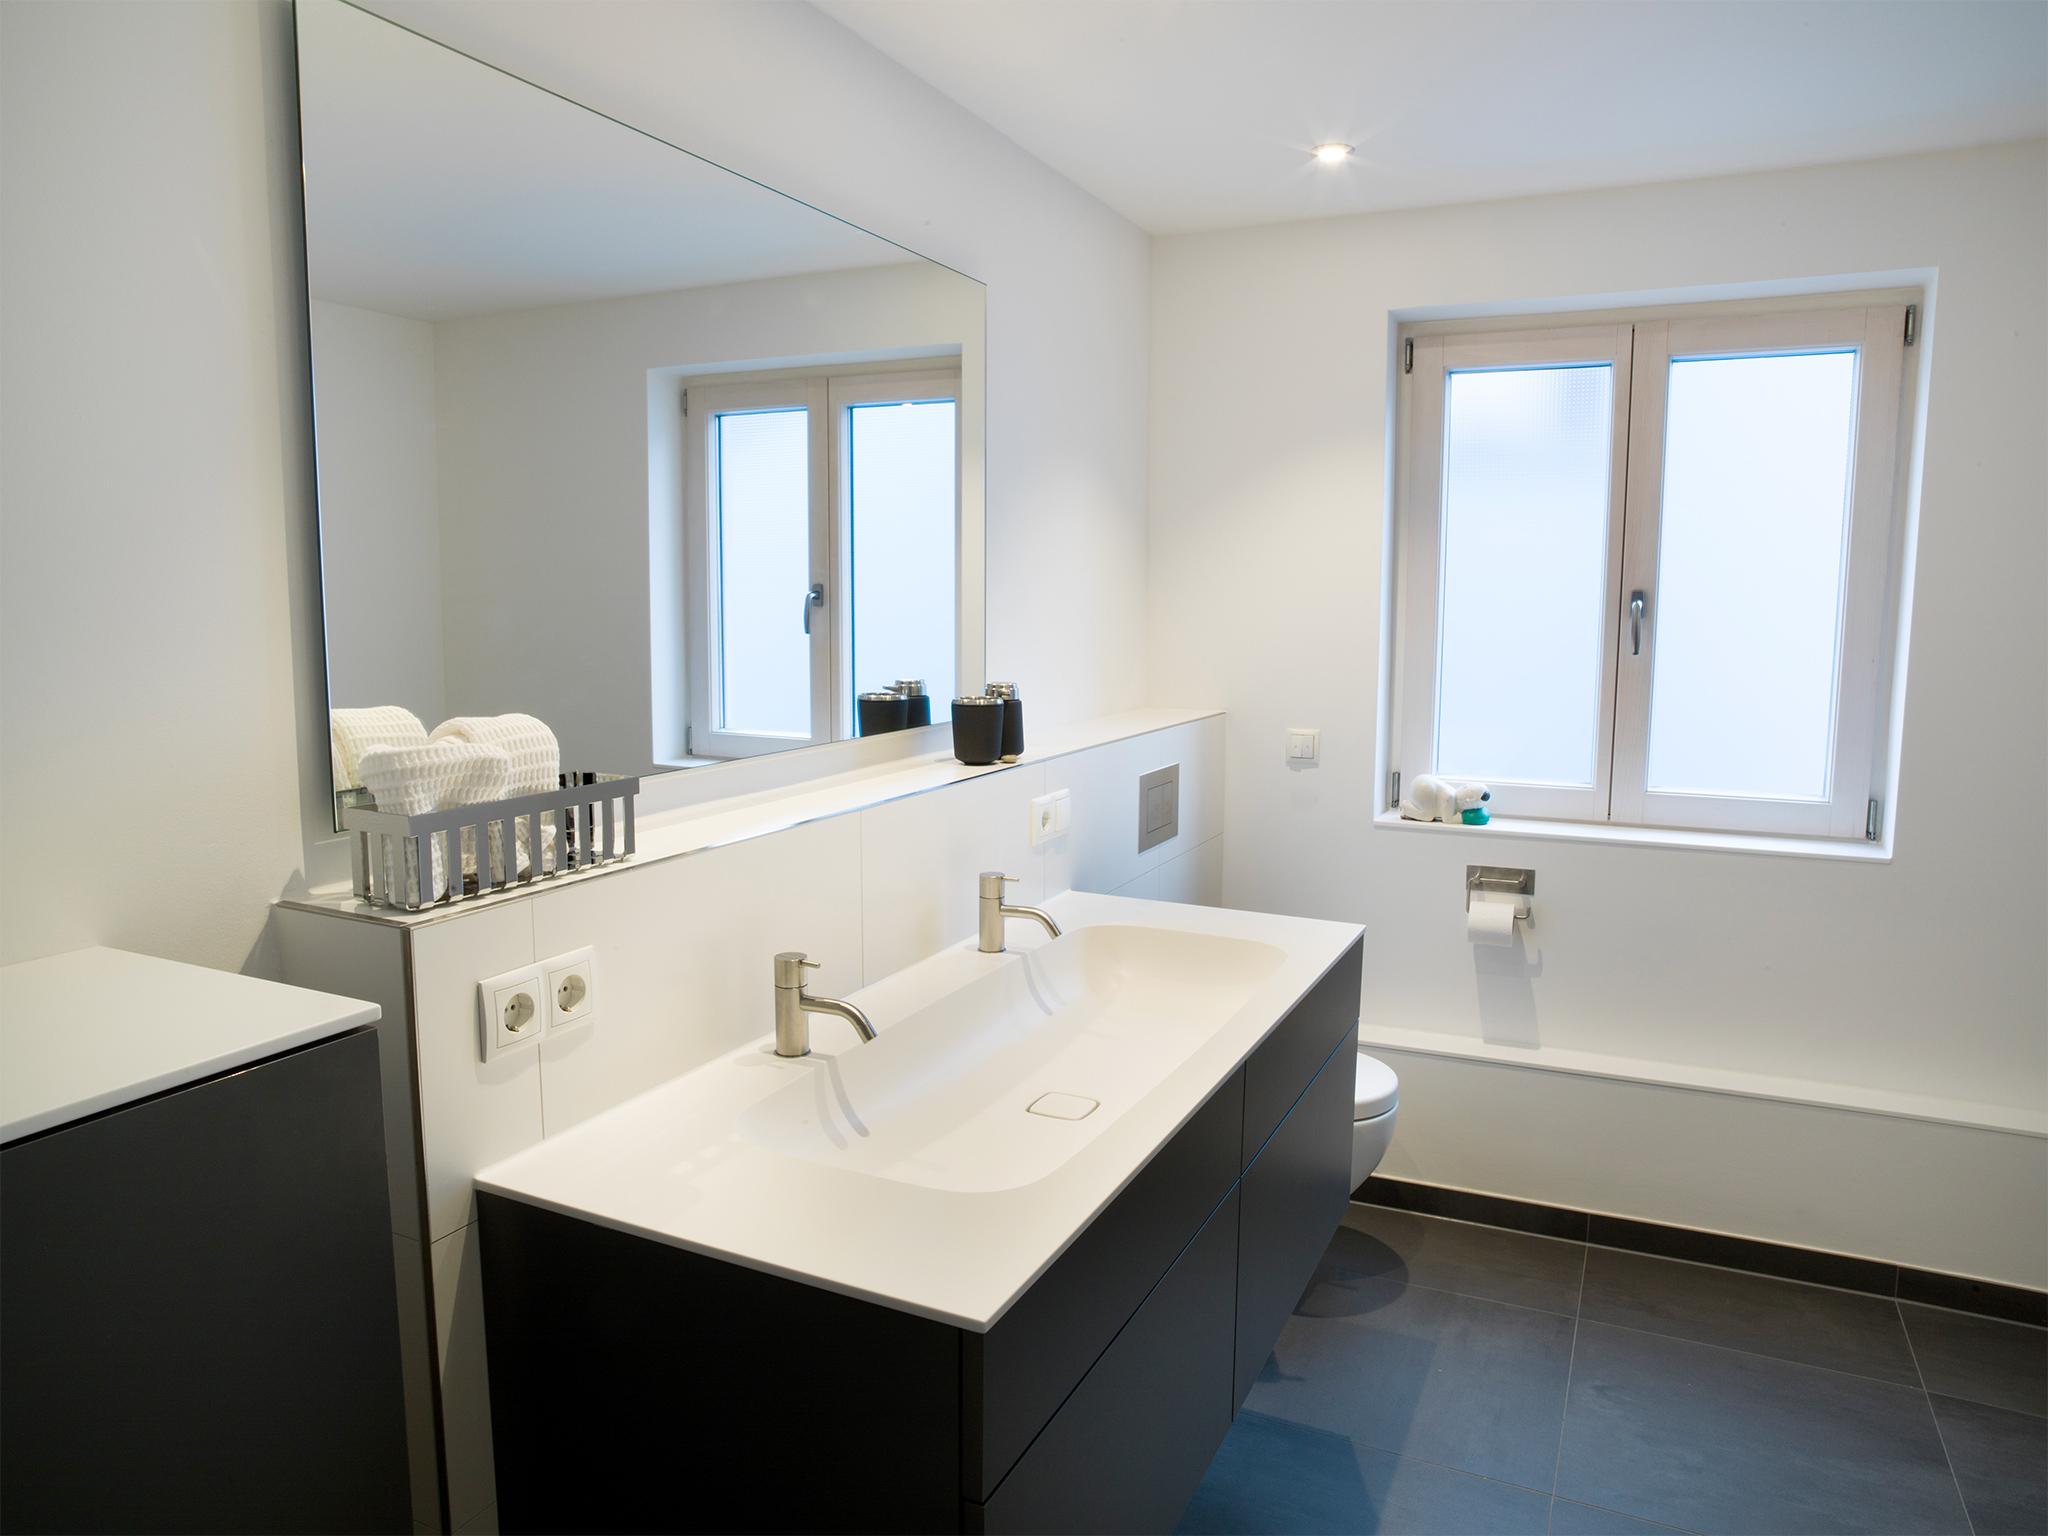 Der Waschtisch: Platz für Zwei #badezimmer #duschbad #ebenerdigedusche #doppelwaschtisch ©HEIMWOHL GmbH